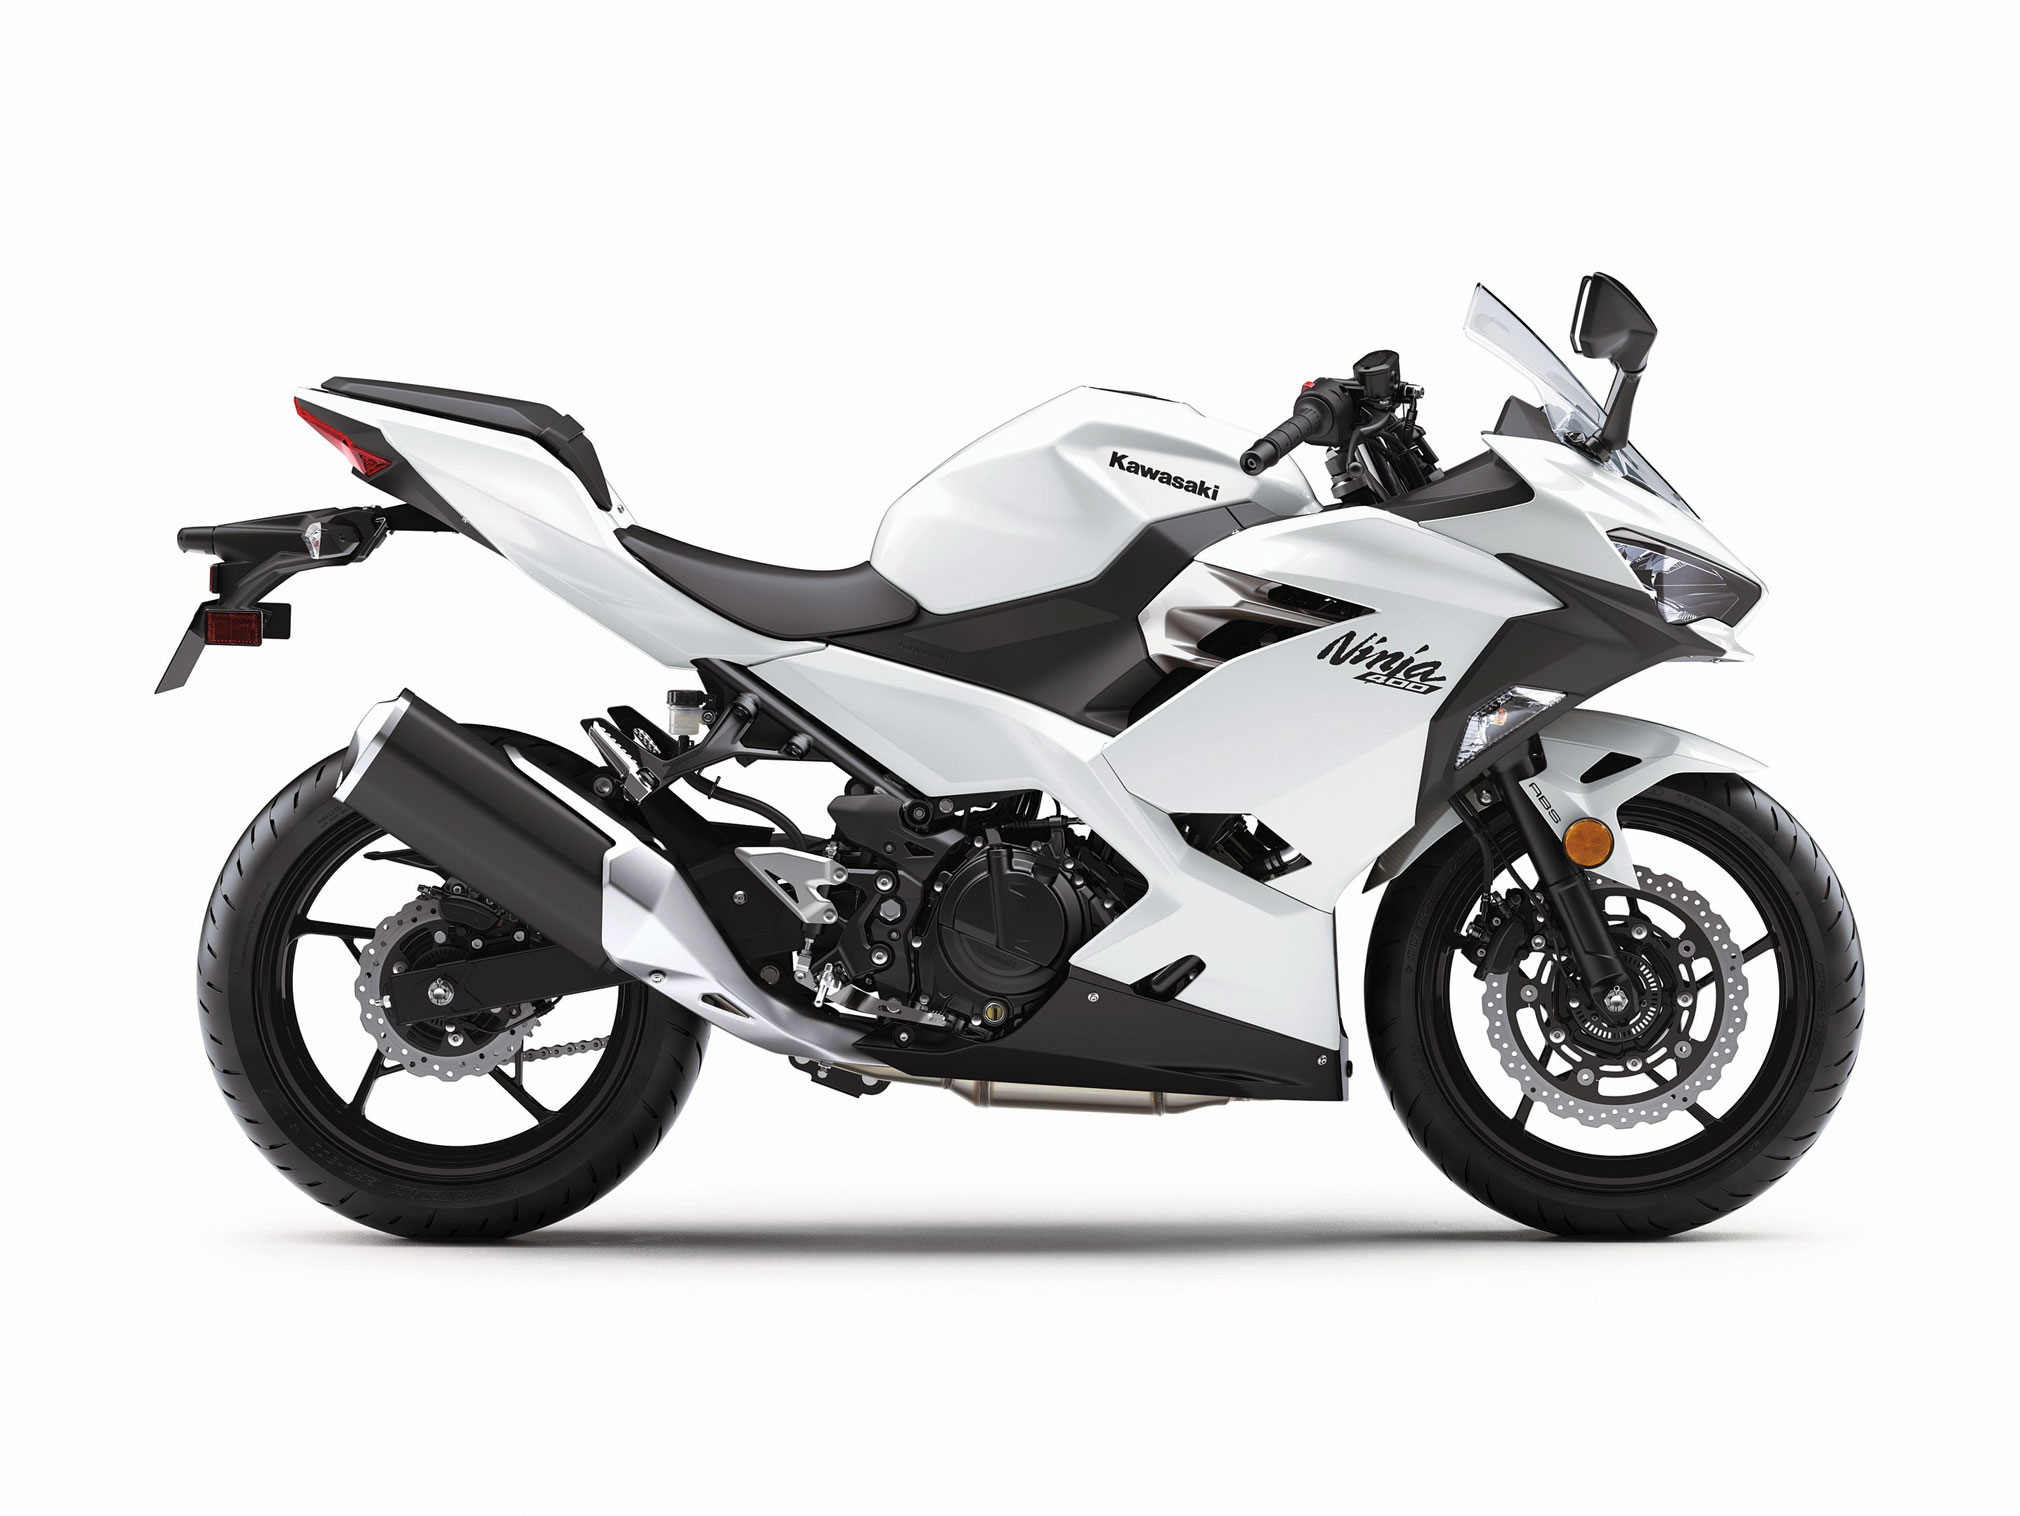 2020 Kawasaki Ninja 400 ABS Guide • Total Motorcycle